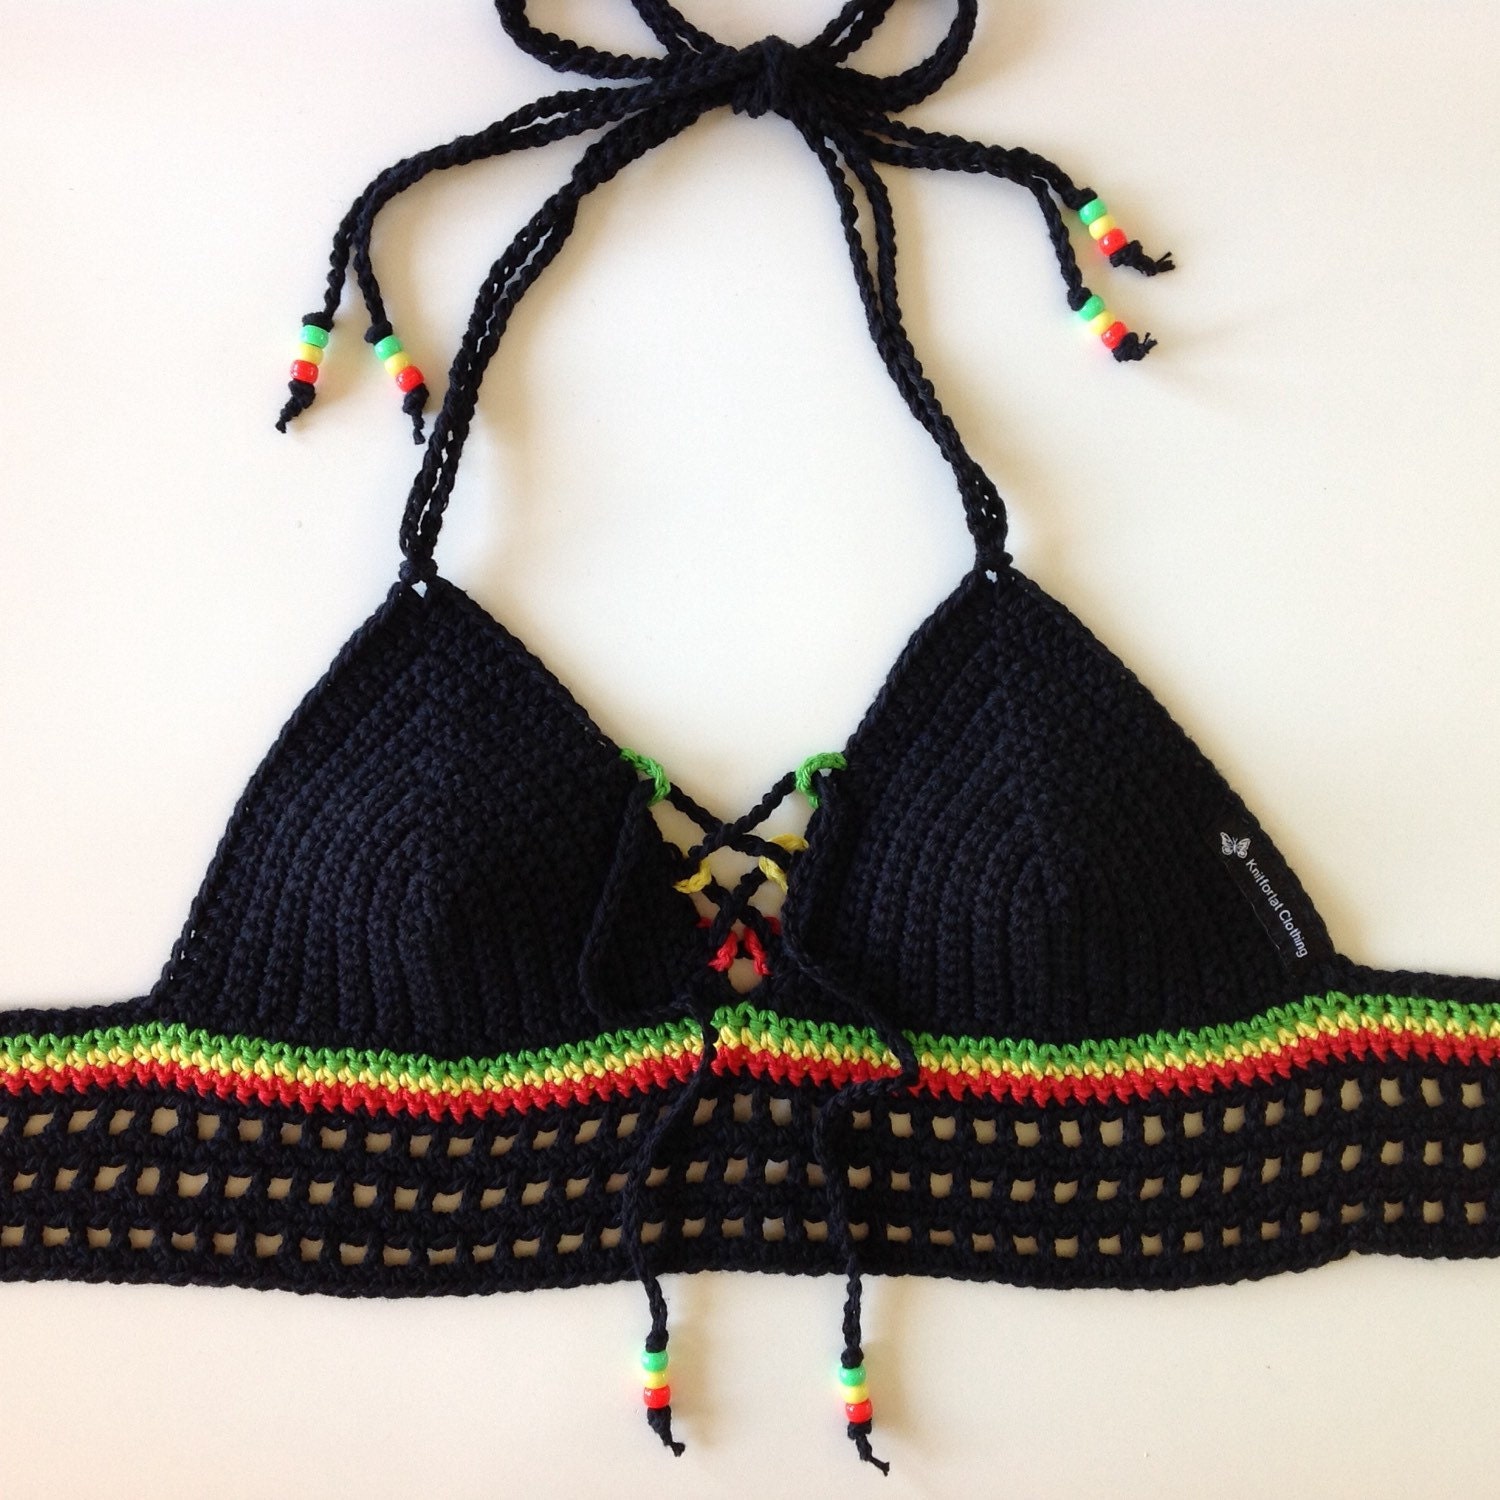 Rasta Coachella Style Crochet Bra by KnitfortatClothing on Etsy